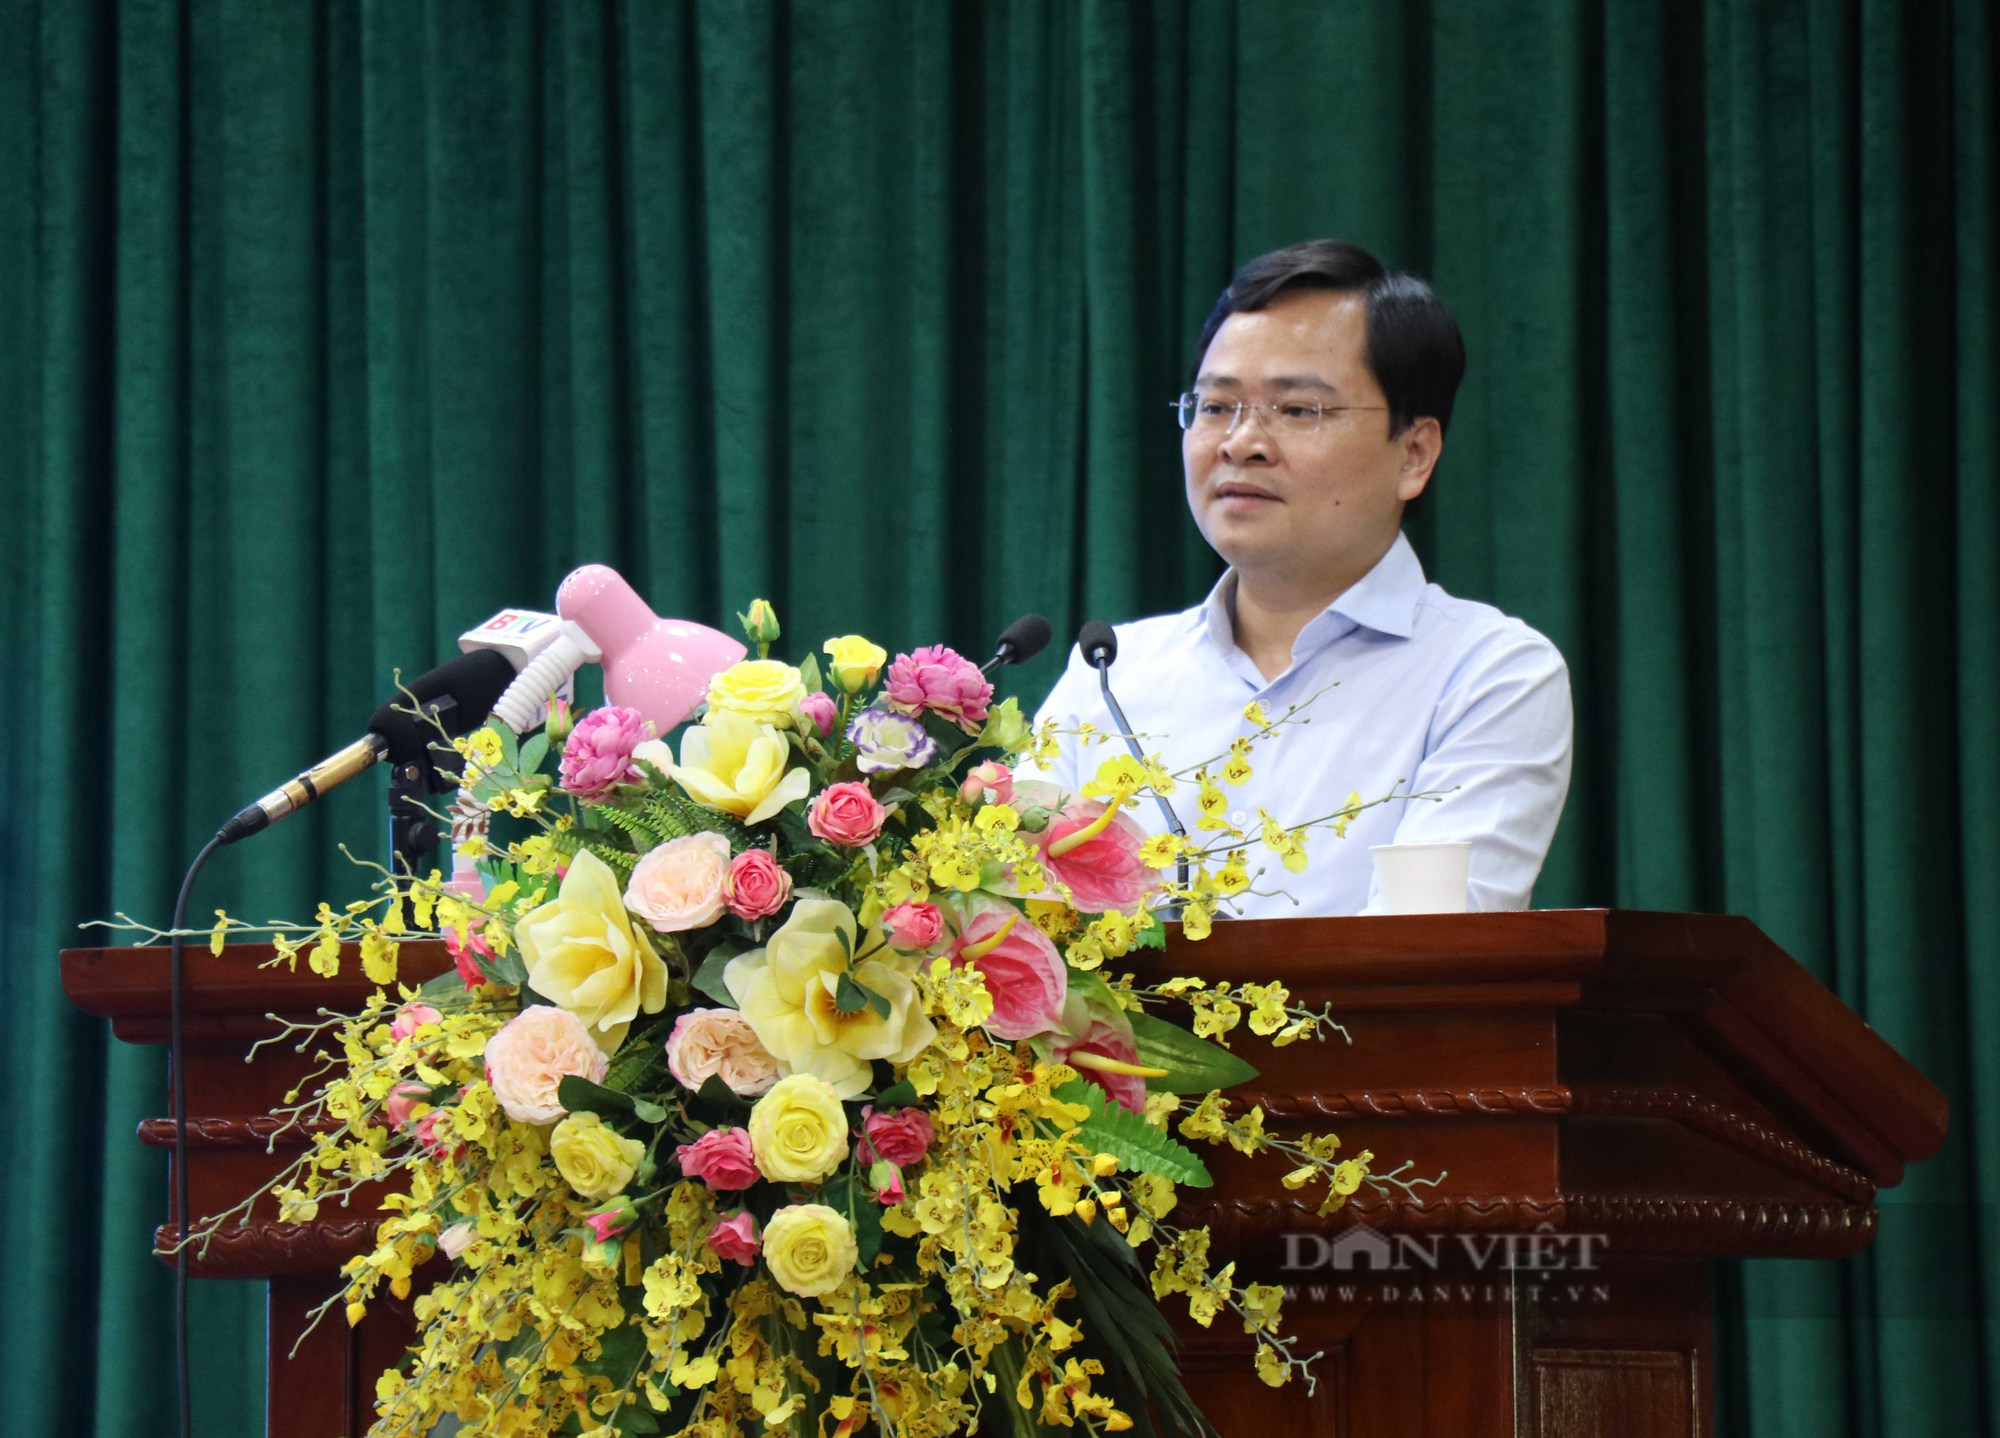 Bí thư Tỉnh ủy Bắc Ninh Nguyễn Anh Tuấn: Chuyển đổi số phải bắt đầu từ công dân số - Ảnh 1.